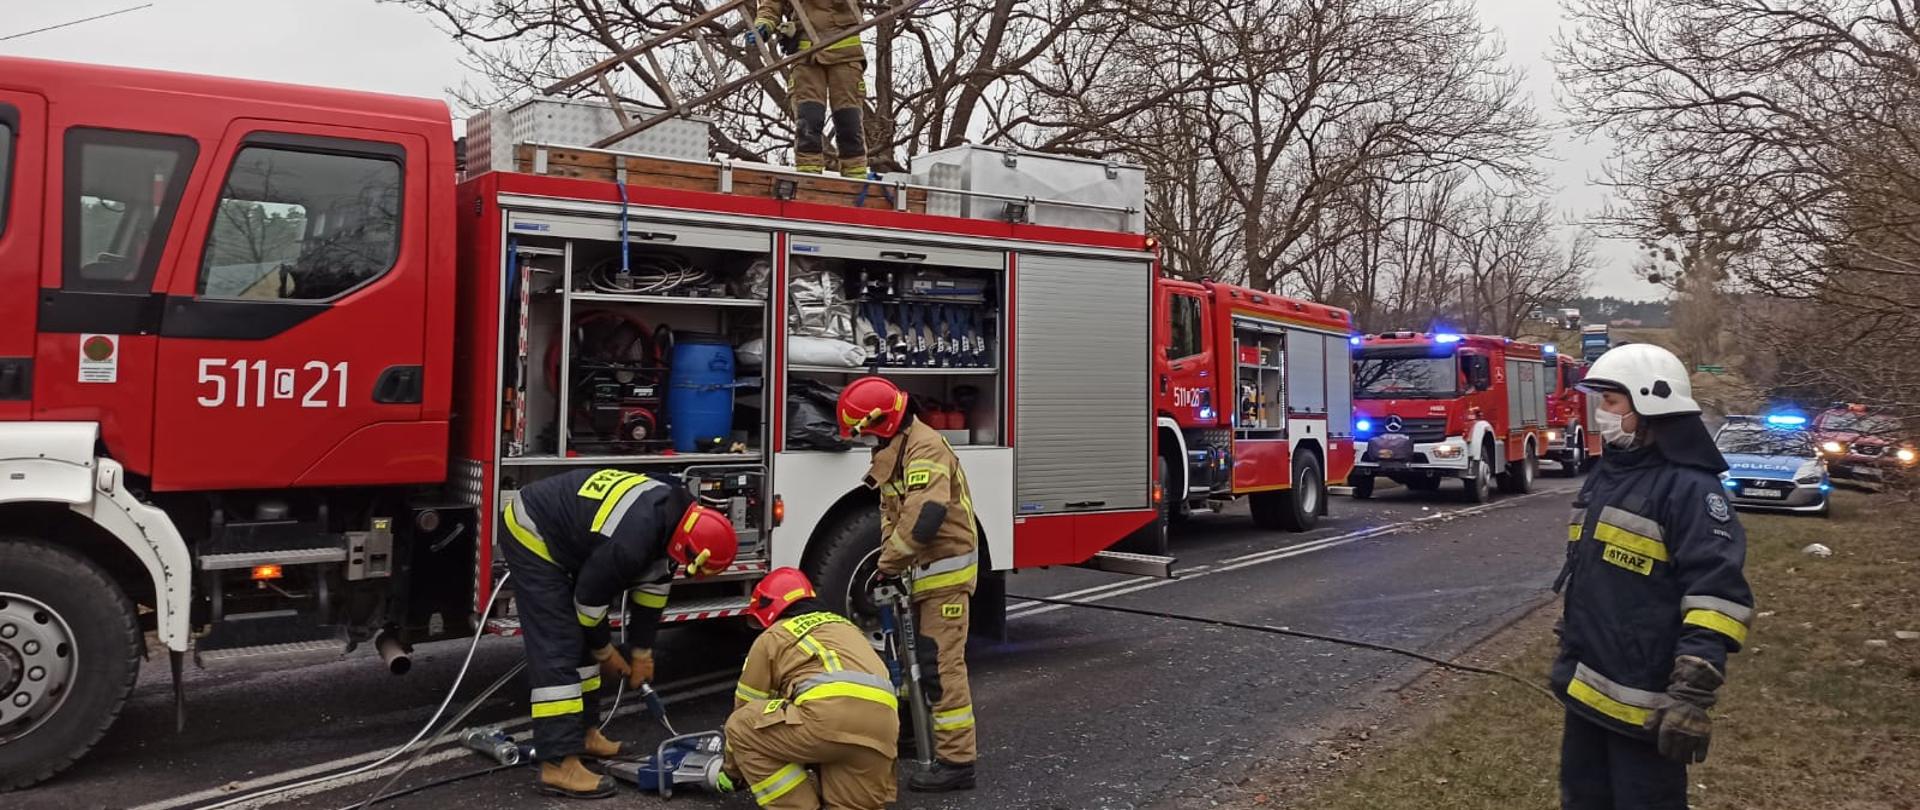 Cztery samochody pożarnicze stoją na jezdni. Strażacy przygotowują sprzęt hydrauliczny do działań. W tle po prawo widoczny radiowóz a za nim jeszcze jeden osobowy pojazd pożarniczy.